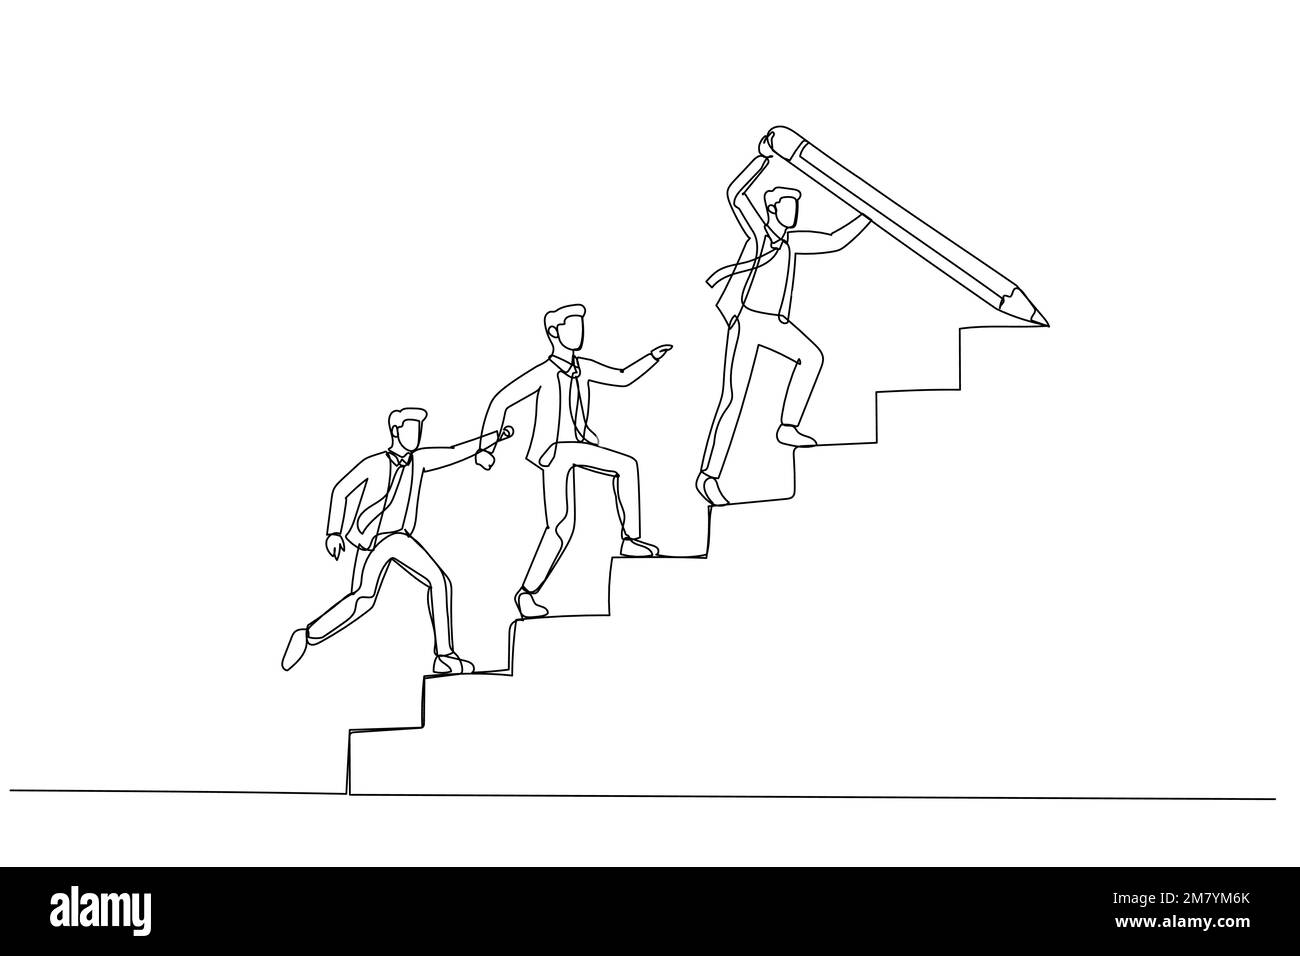 Illustrazione di un uomo d'affari disegnare scala con matita per guidare la squadra a piedi su leader guida il concetto di crescita della squadra. Design di stile artistico a linea singola Illustrazione Vettoriale